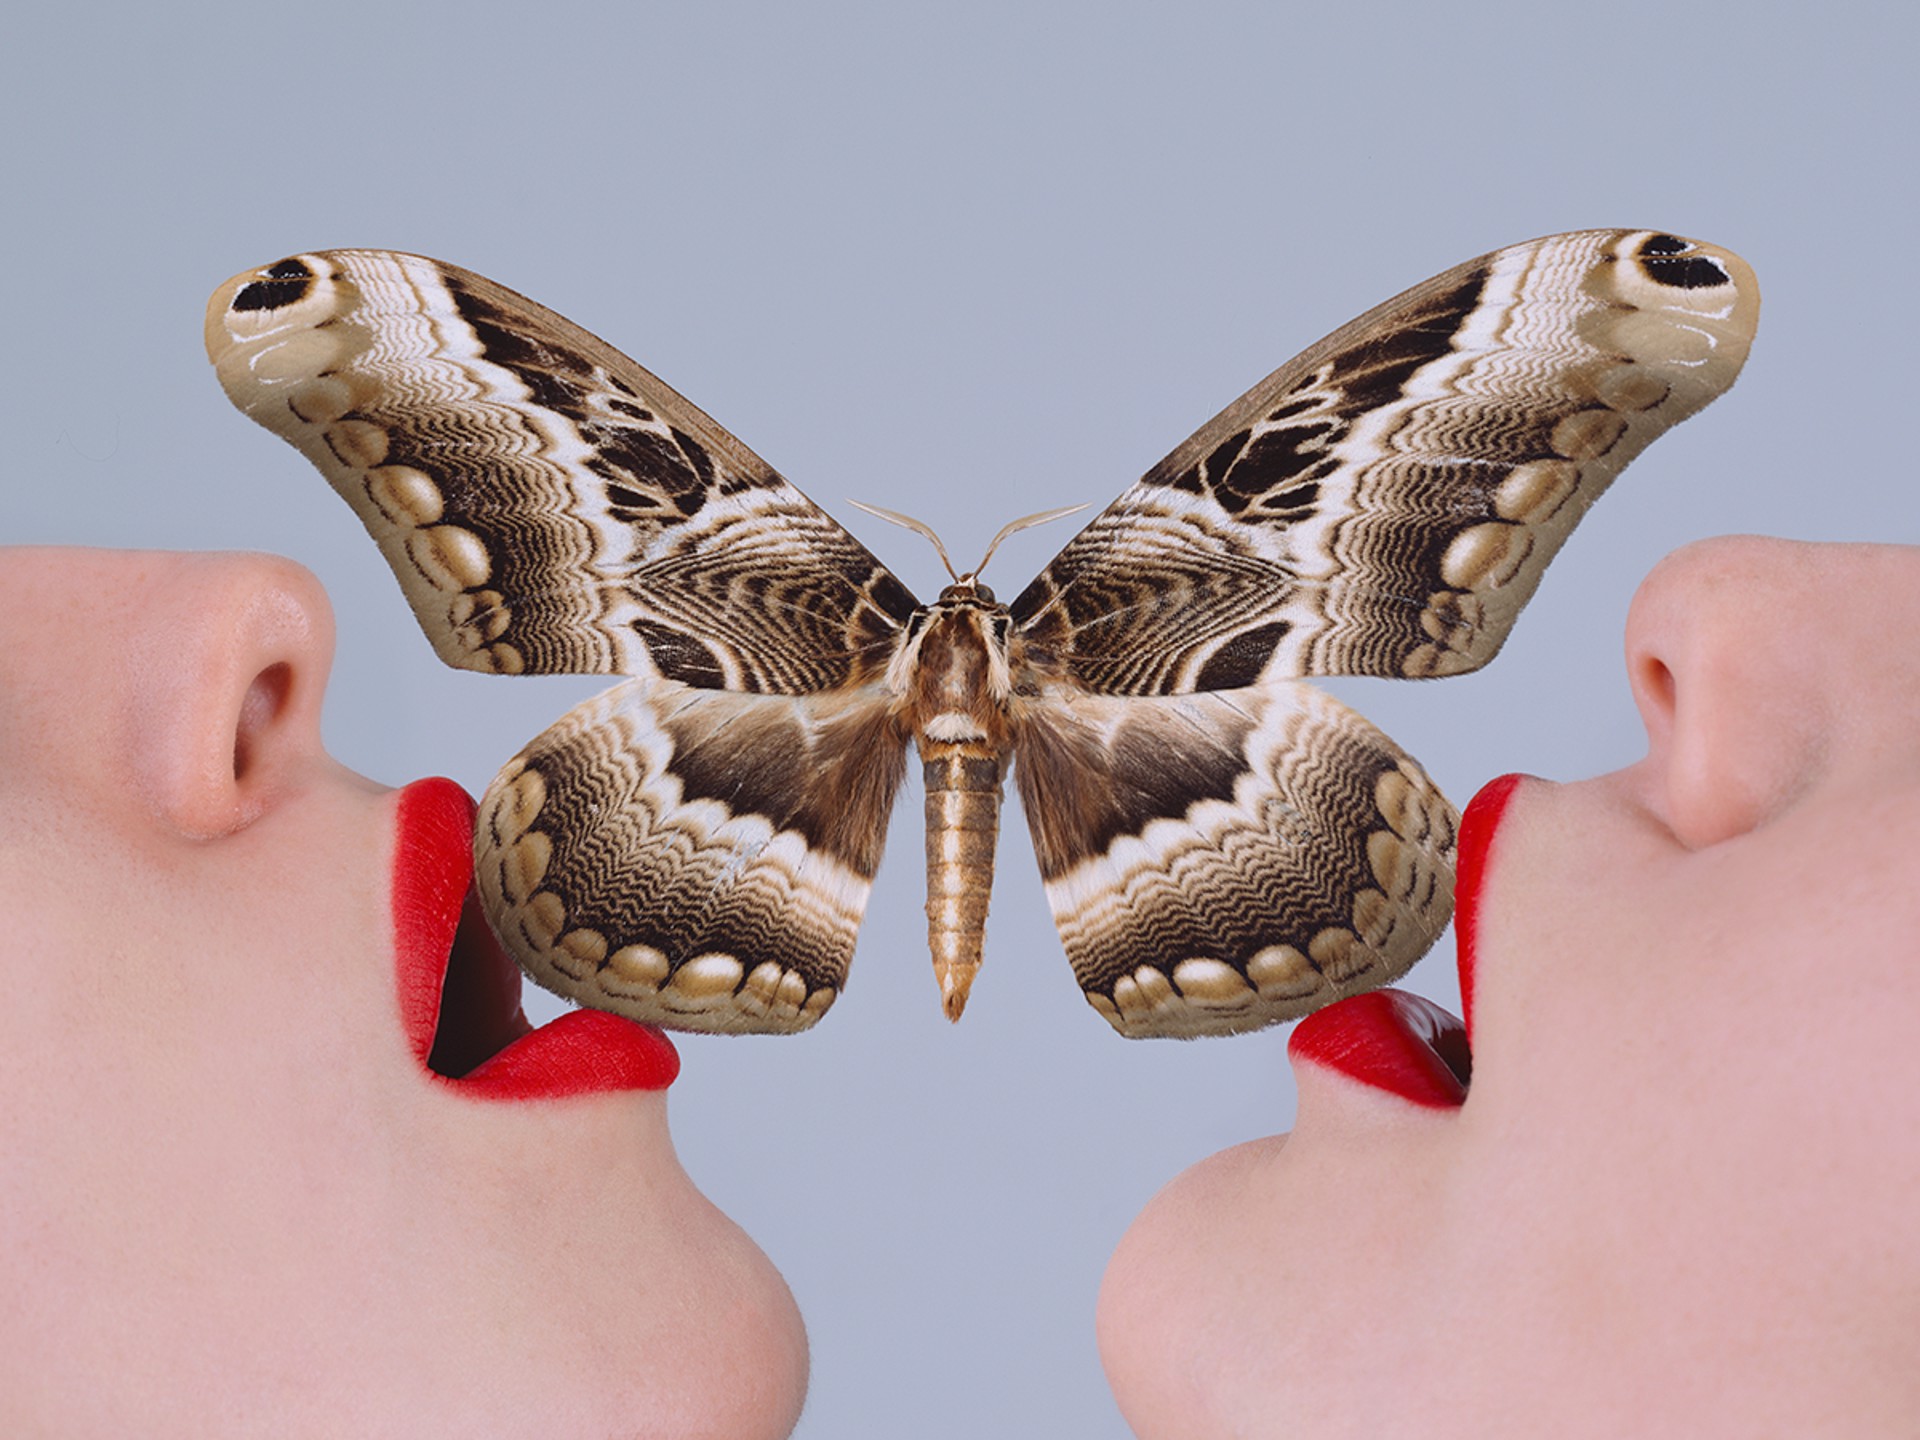 Butterfly by Tyler Shields